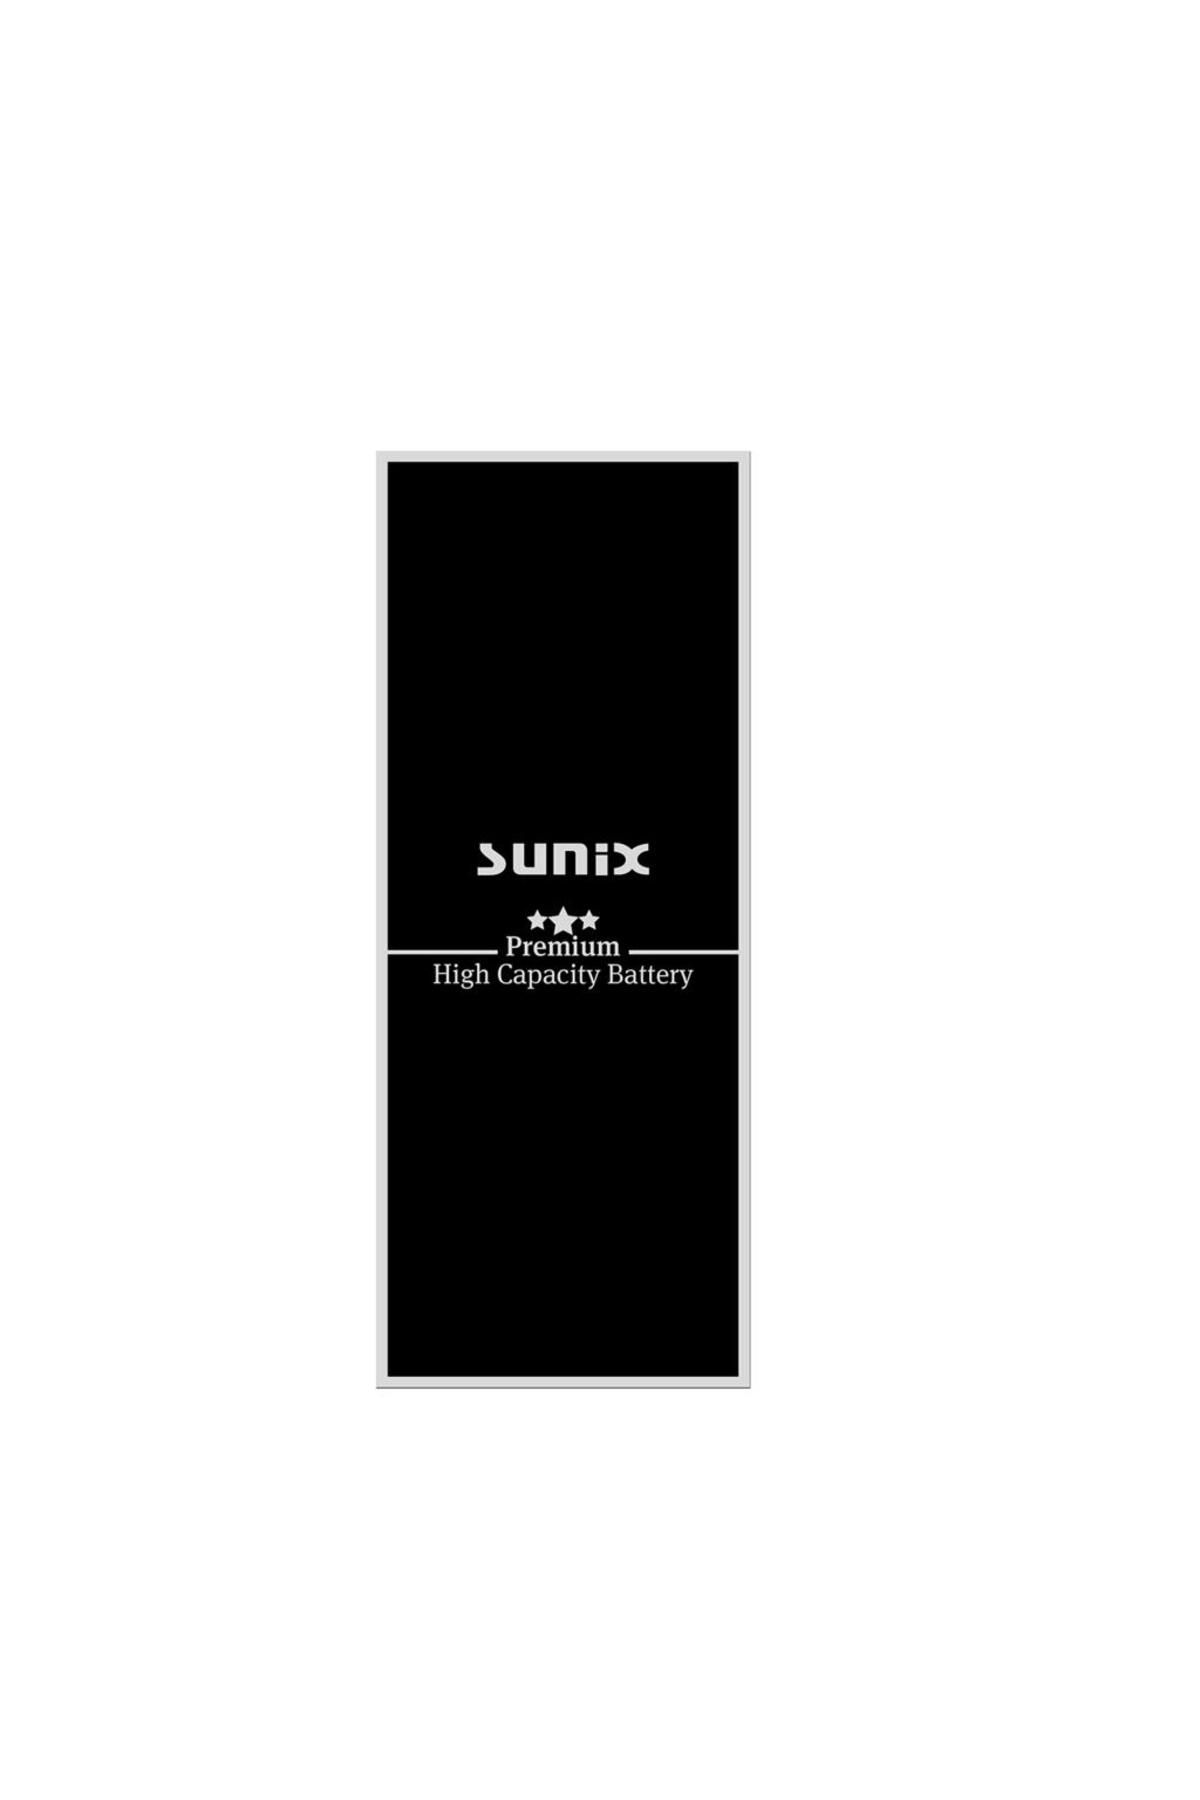 Sunix İphone 5 Ile Uyumlu Premium Güçlendirilmiş Yüksek Kapasiteli Batarya